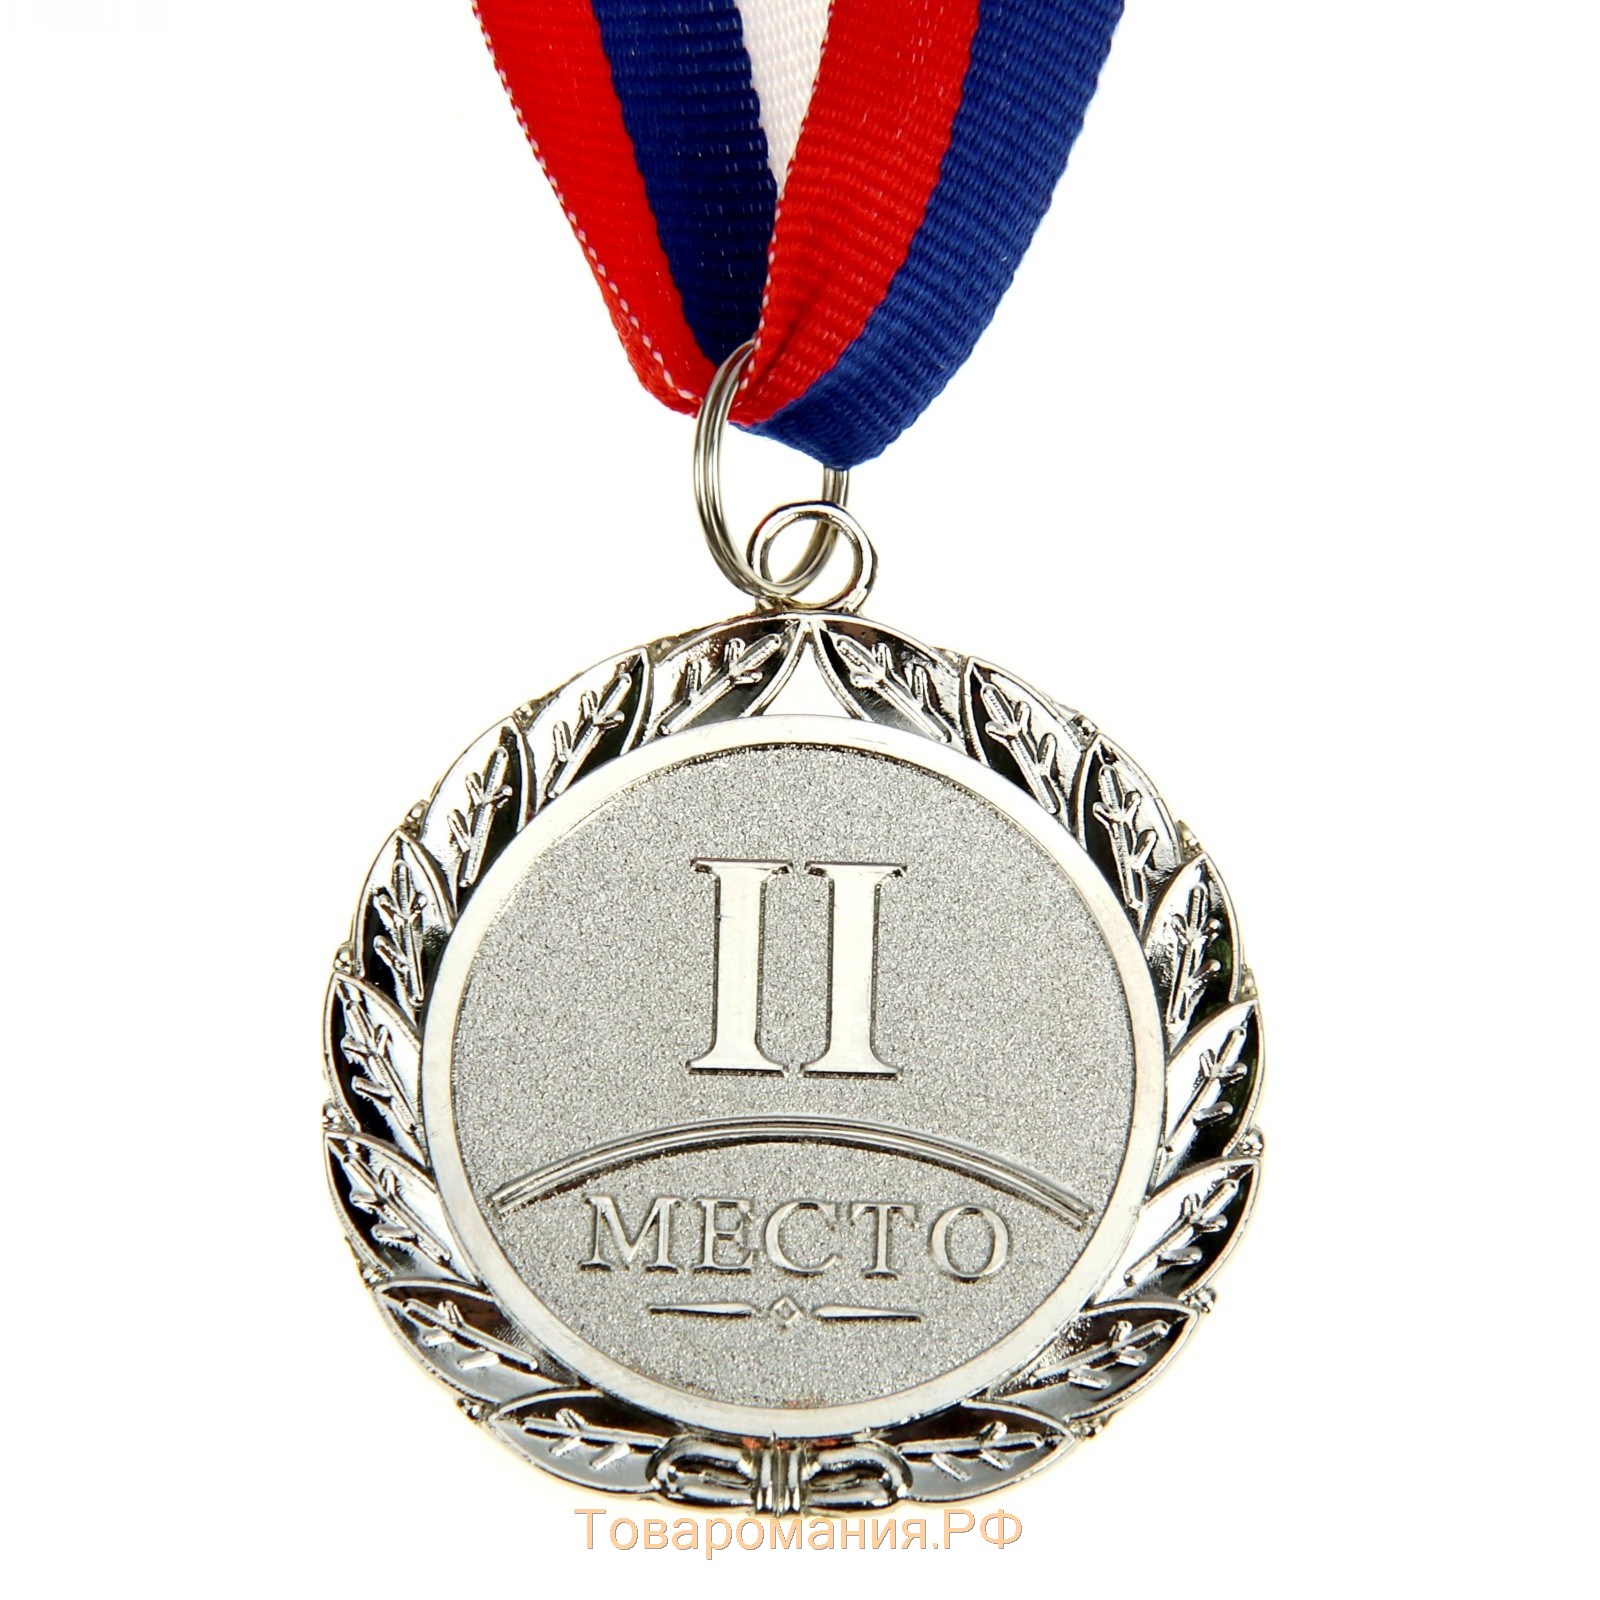 Медаль призовая 001 диам 5 см. 2 место. Цвет сер. С лентой